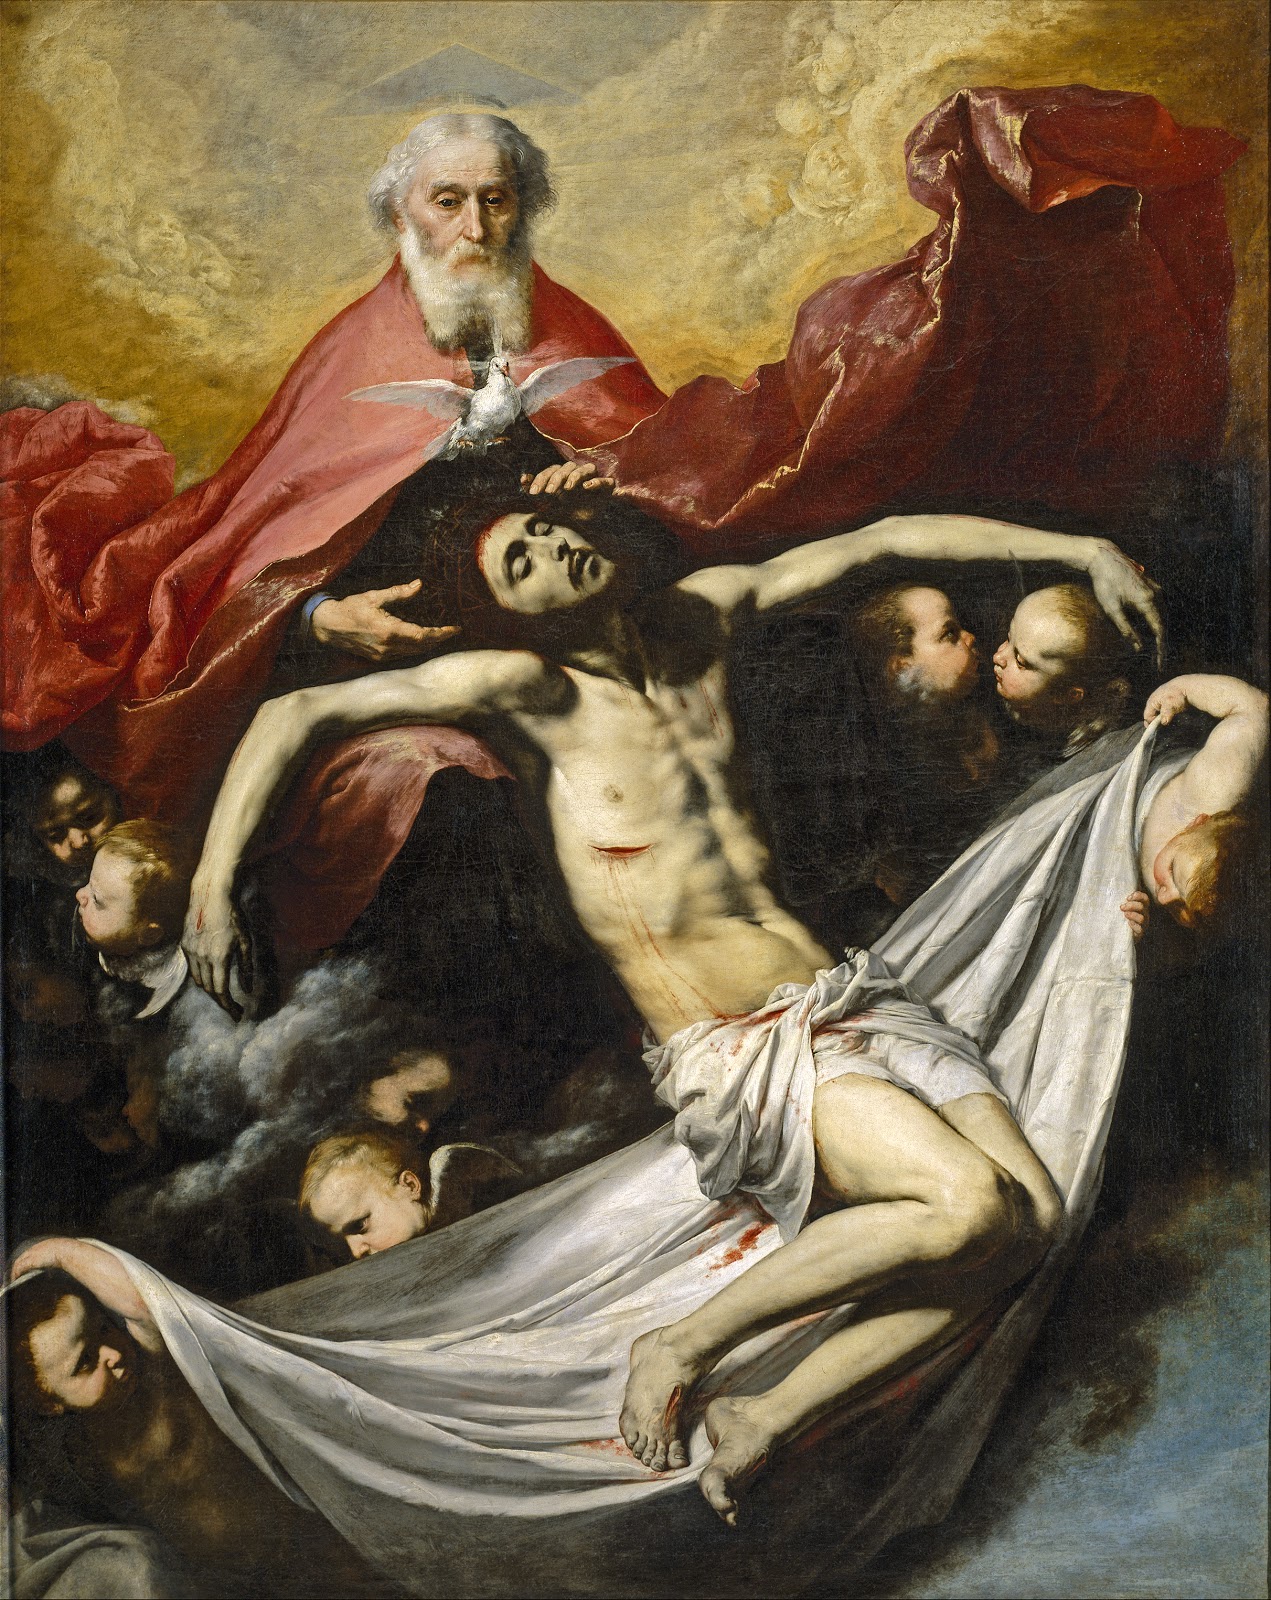 Jusepe+de+Ribera-1591-1652 (113).jpg